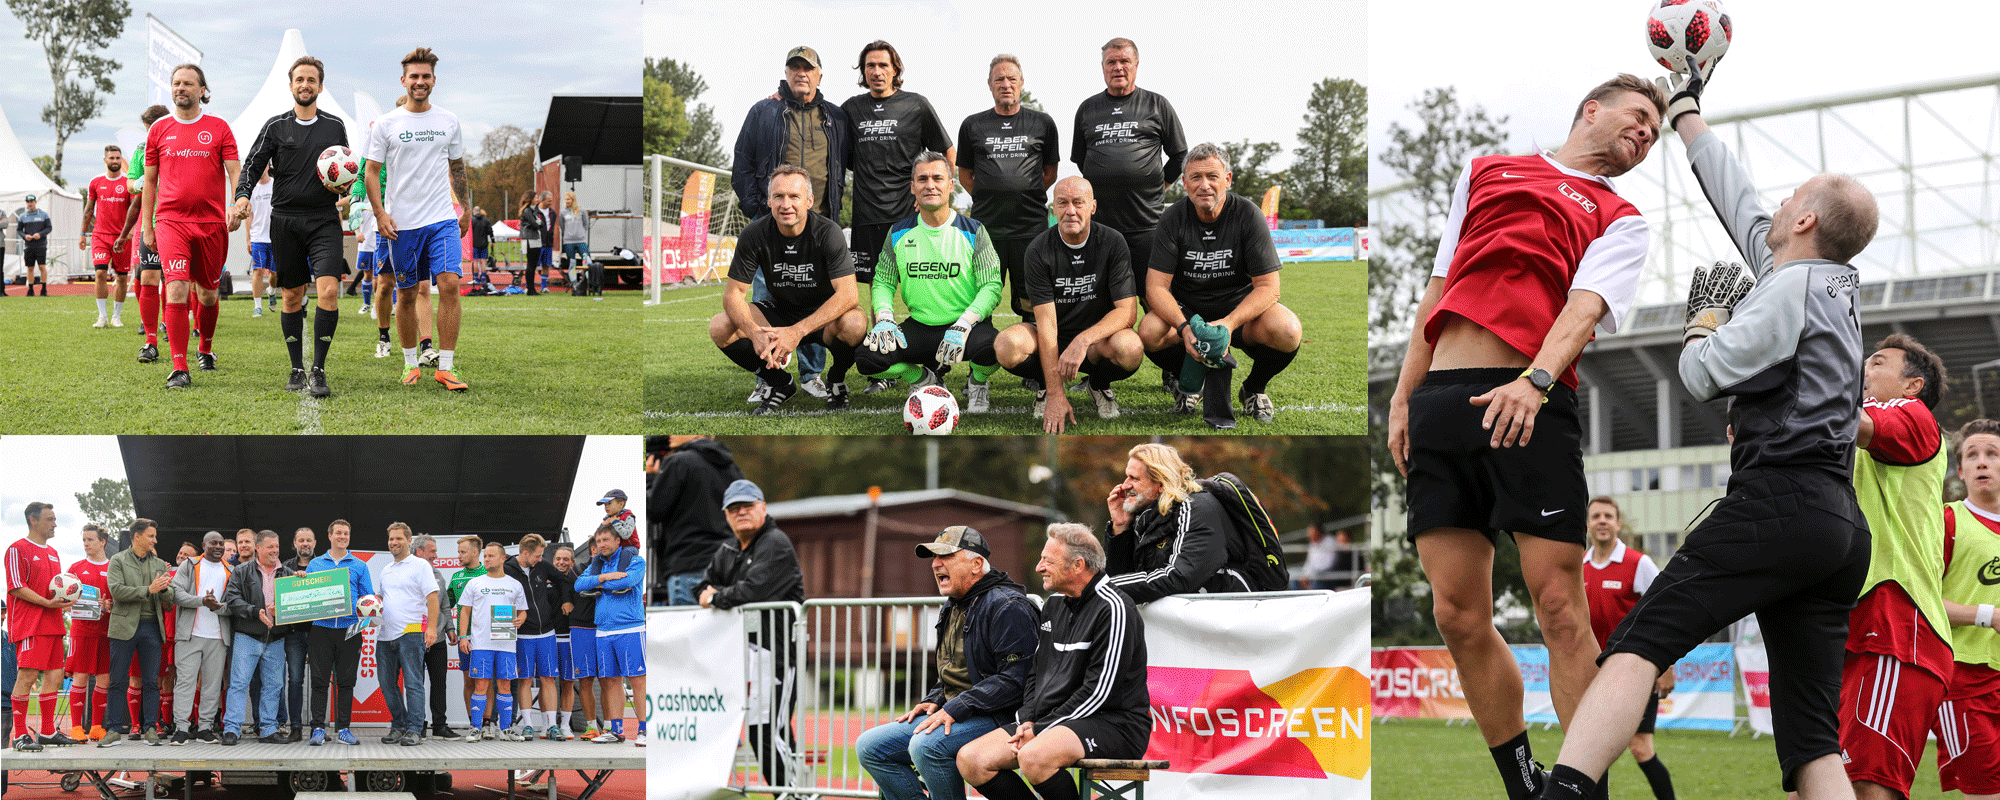 Die Teilnehmer des Turniers, u.a. Hans Krankl Legenden Team mit Hans Krankl, Toni Pfeffer, Michael Hatz